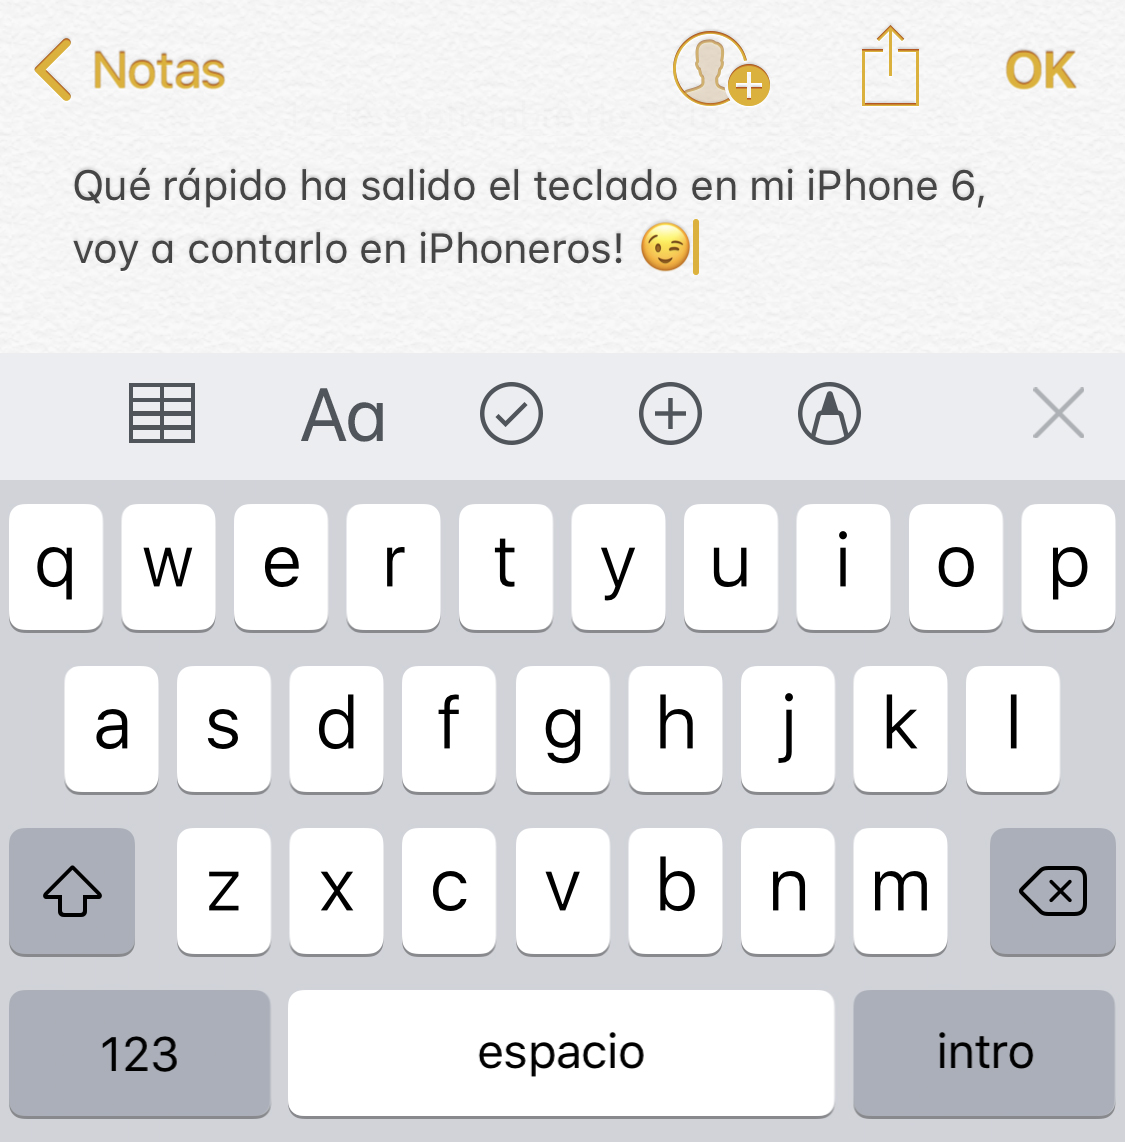 El teclado virtual aparece mucho más rápido en iOS 12, comparado con iOS 11